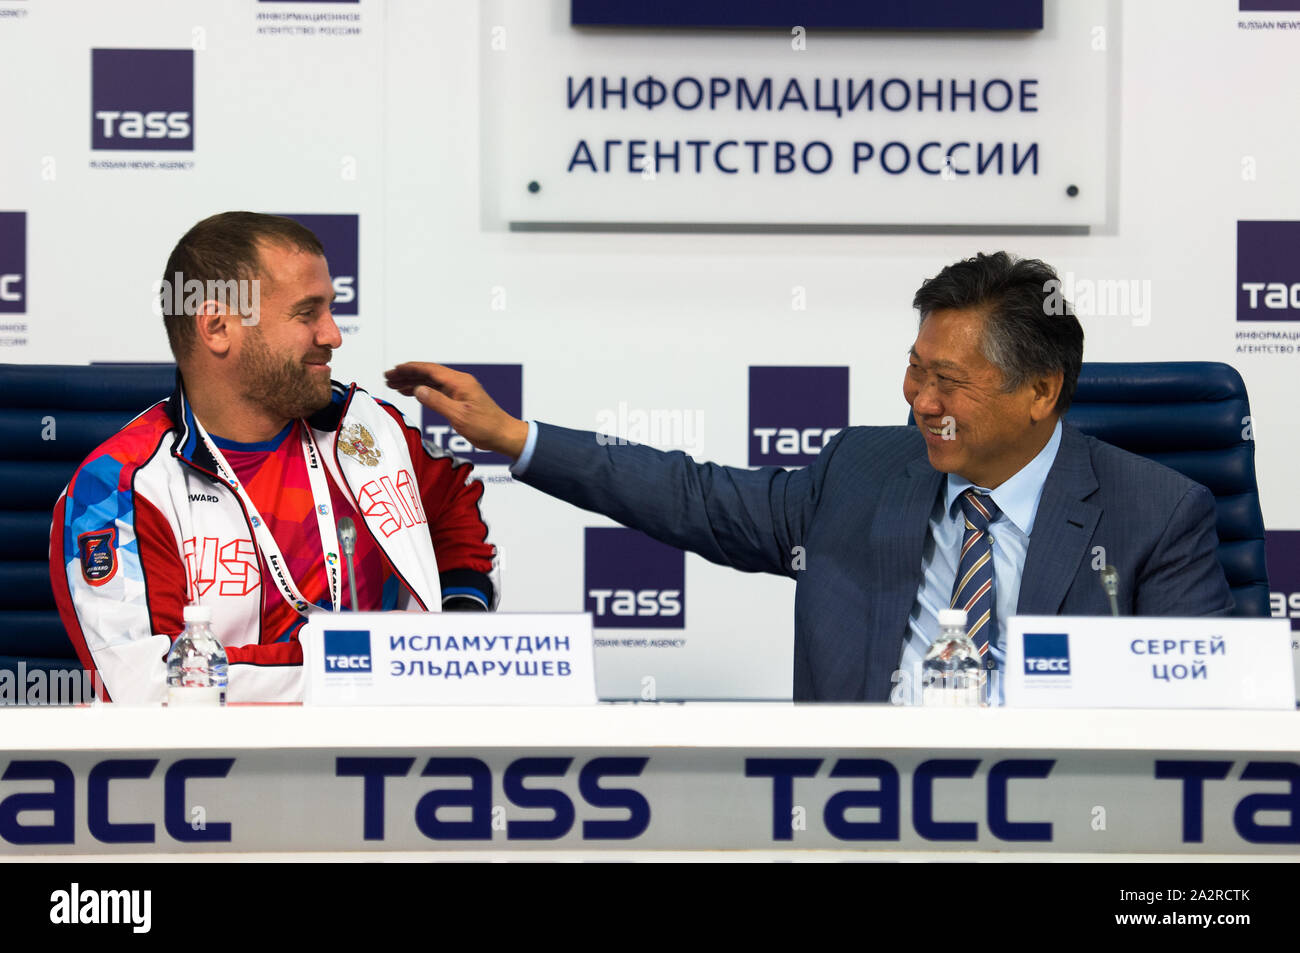 Moskau, Russland - OKTOBER 3, 2019: Sergey Tsoy und Islamutdin Eldarushev auf die Pressekonferenz der Internationalen Karate Turnier "Karate 1 - Premier League' am 03.10.2019 in TASS-Center, Moskau, Russland Stockfoto